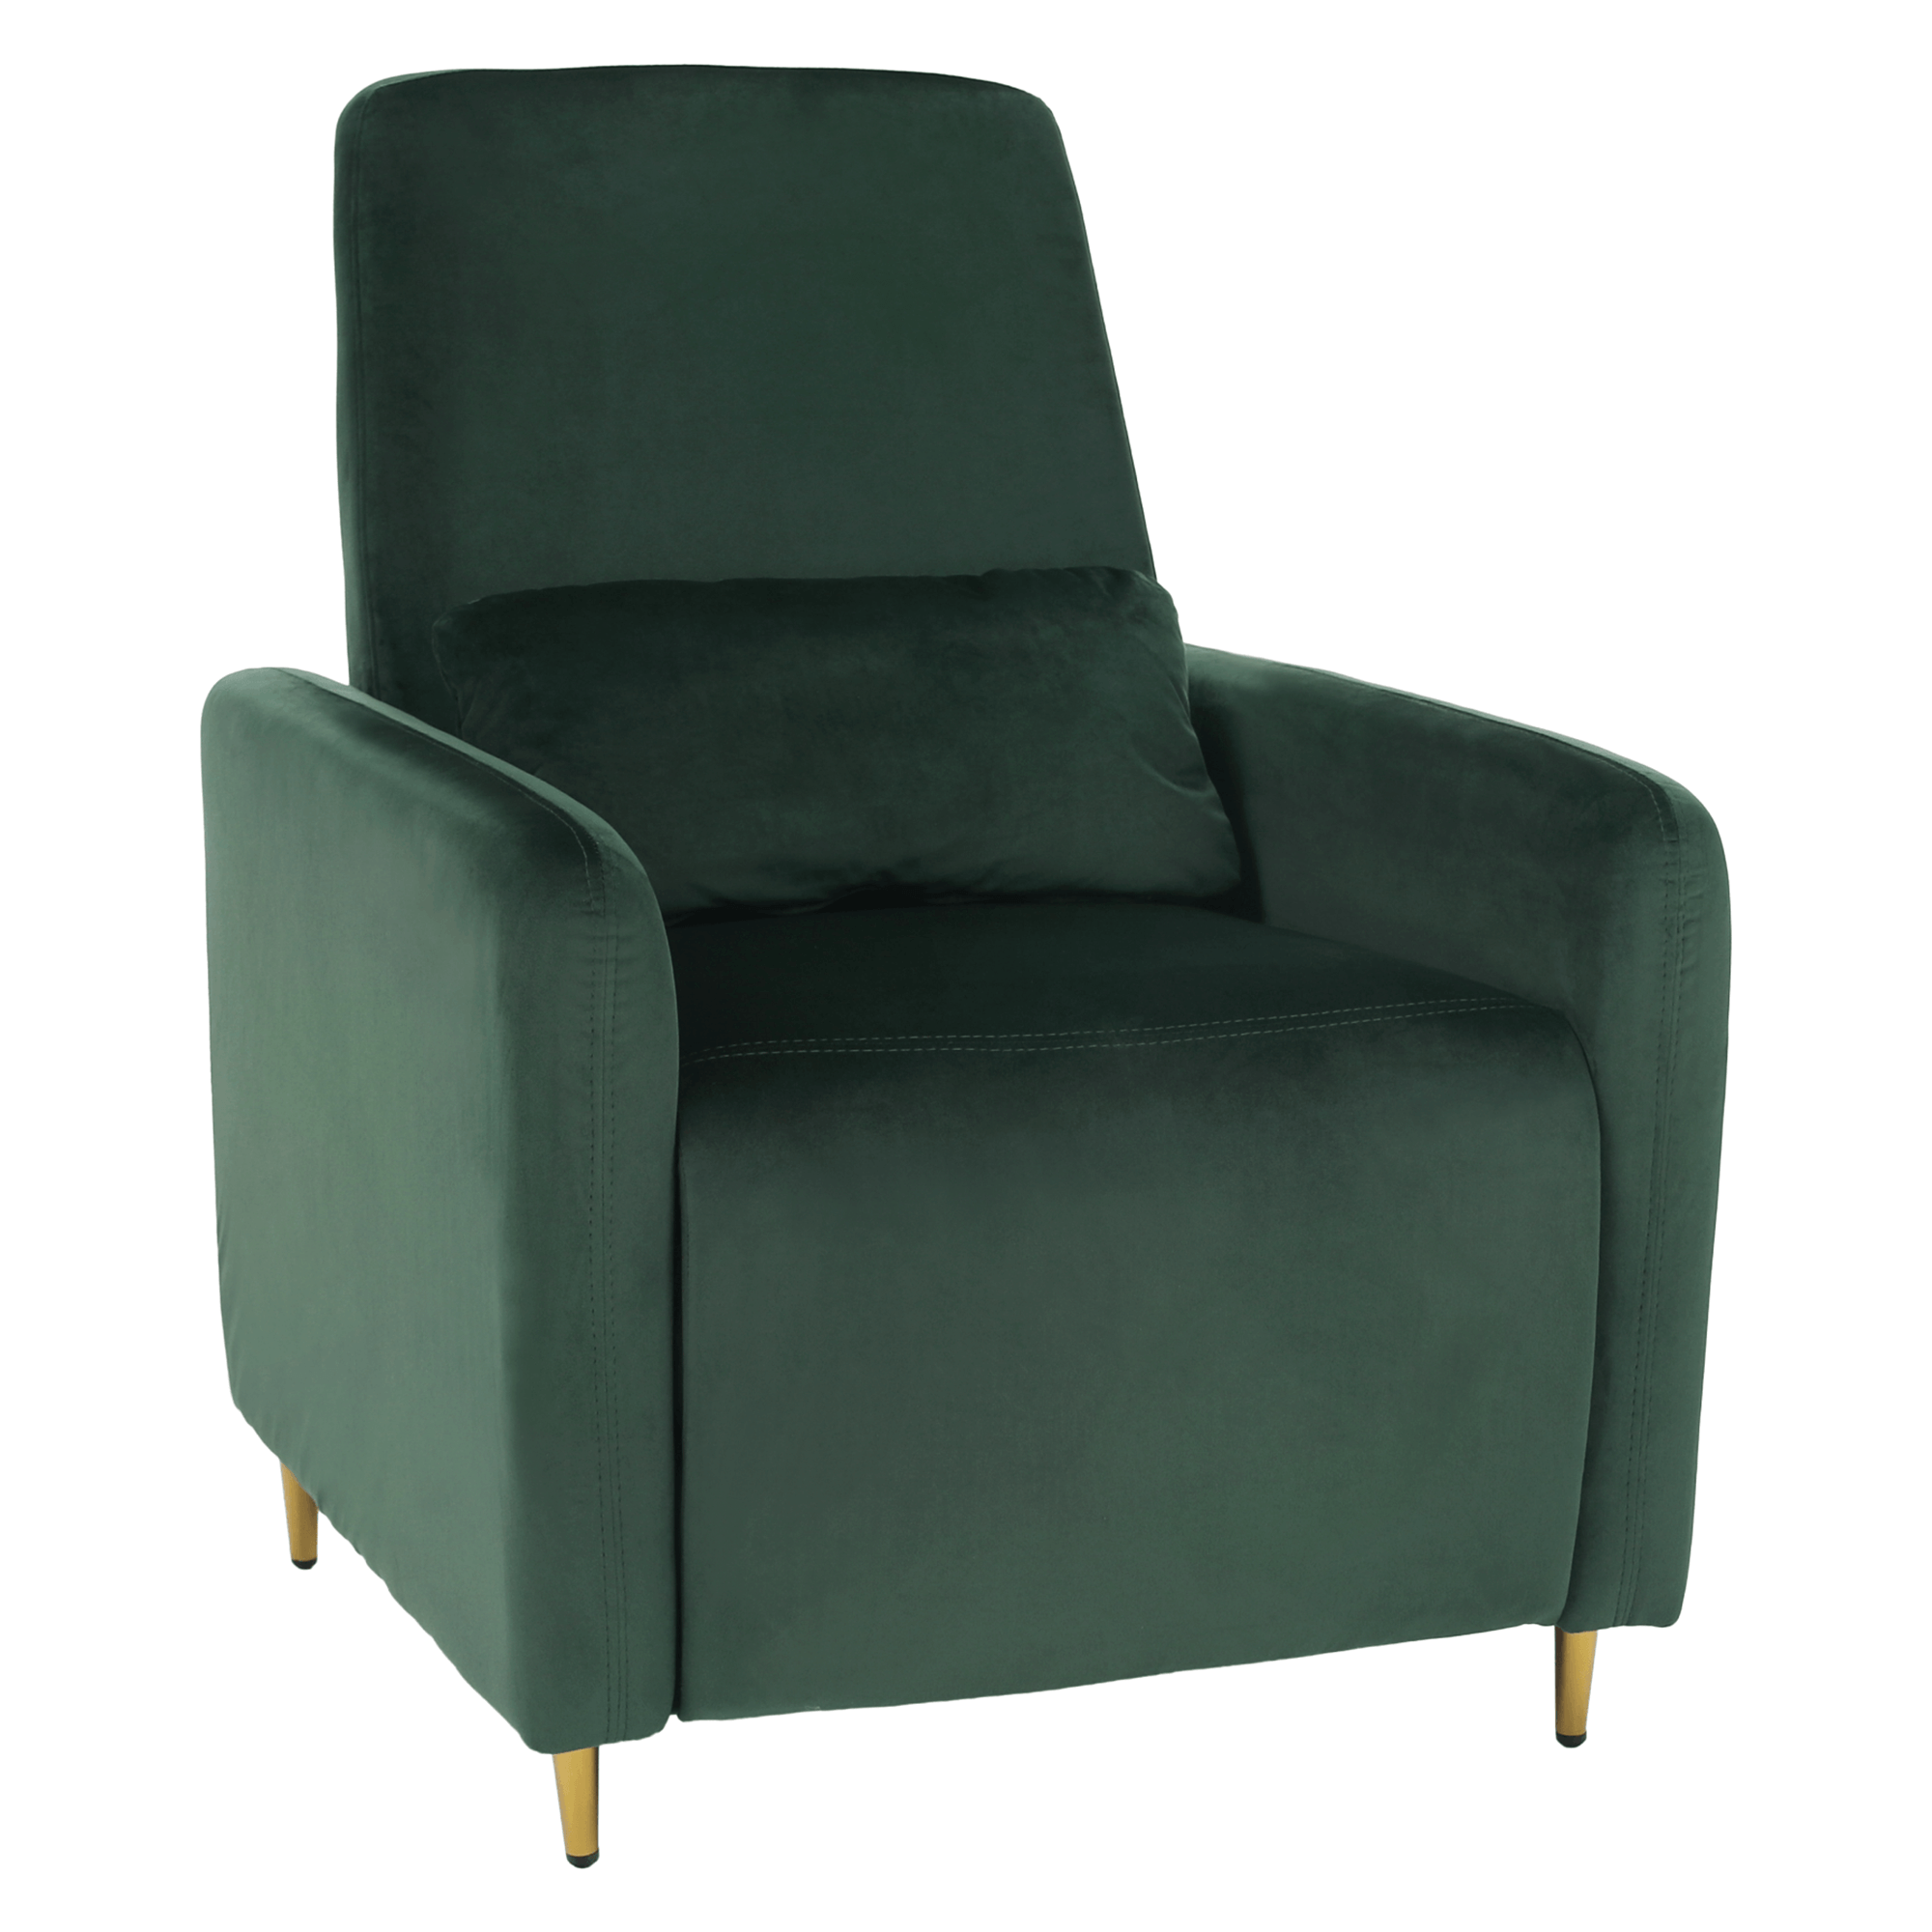 Állítható relaxációs fotel, smaragd Velvet szövet, NAURO